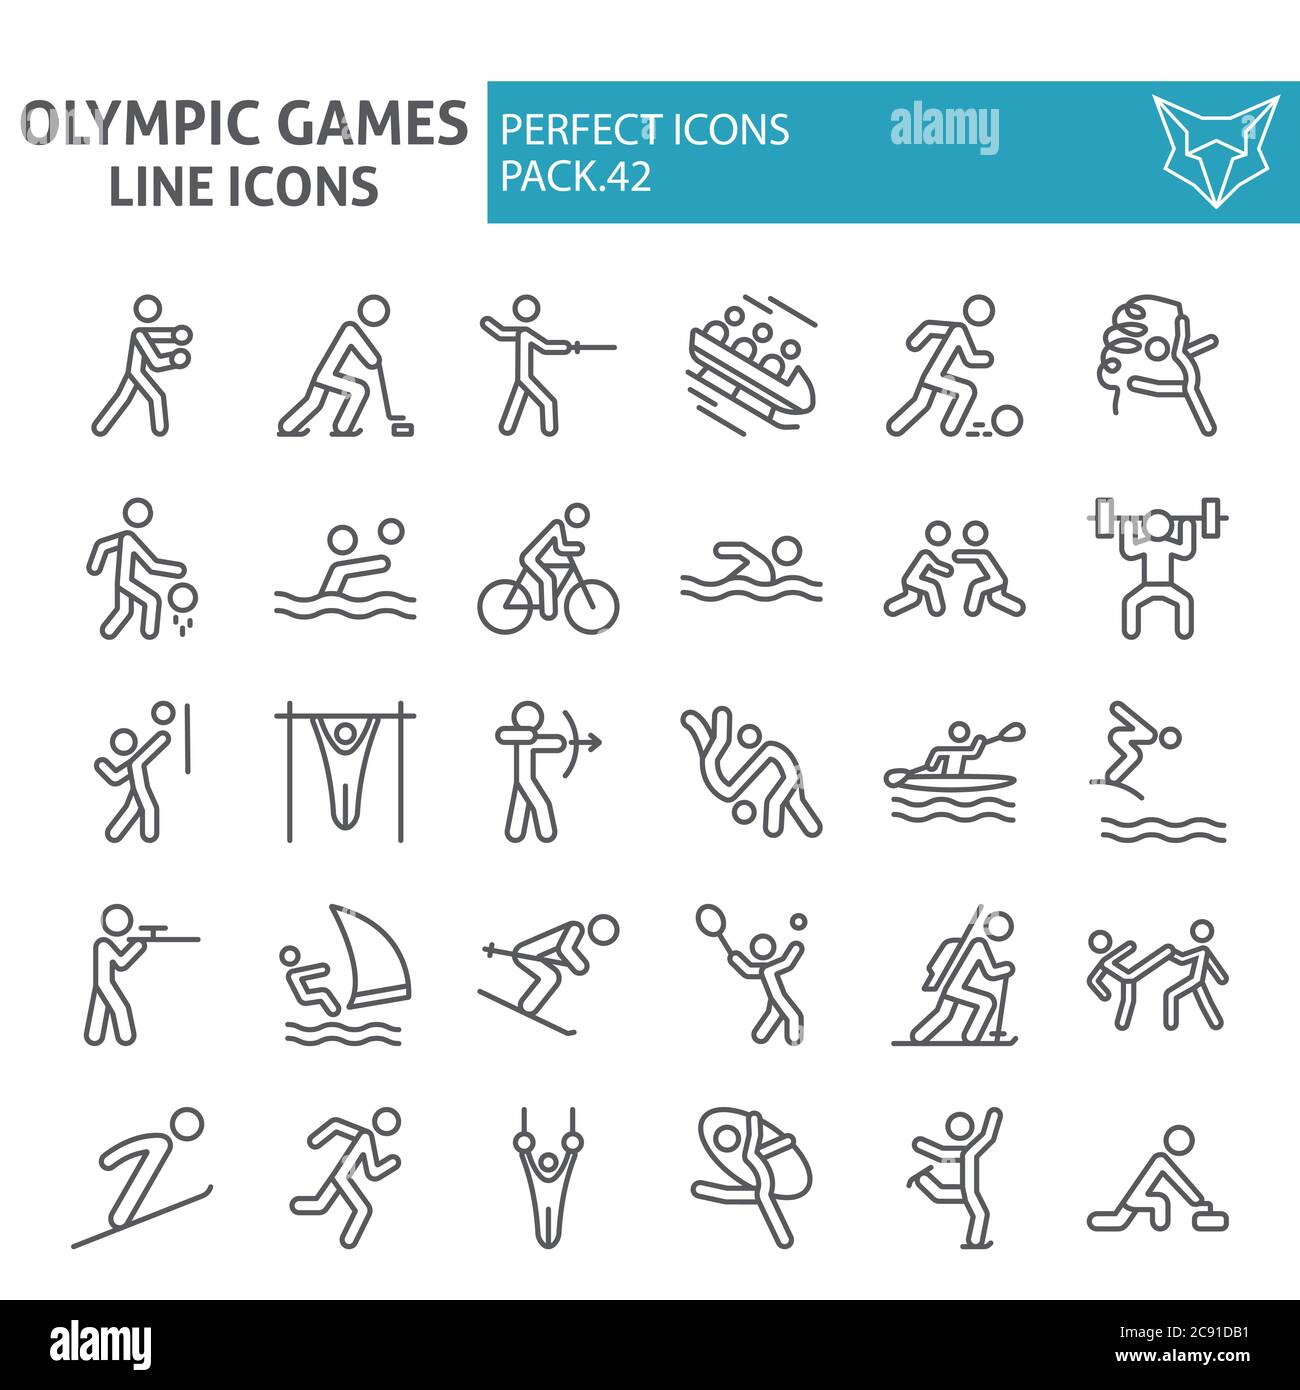 Olympische Spiele Linie Icon-Set, Sport Symbole Sammlung, Vektor-Skizzen, Logo Illustrationen, Sportler Zeichen lineare Piktogramme Paket isoliert auf Stock Vektor